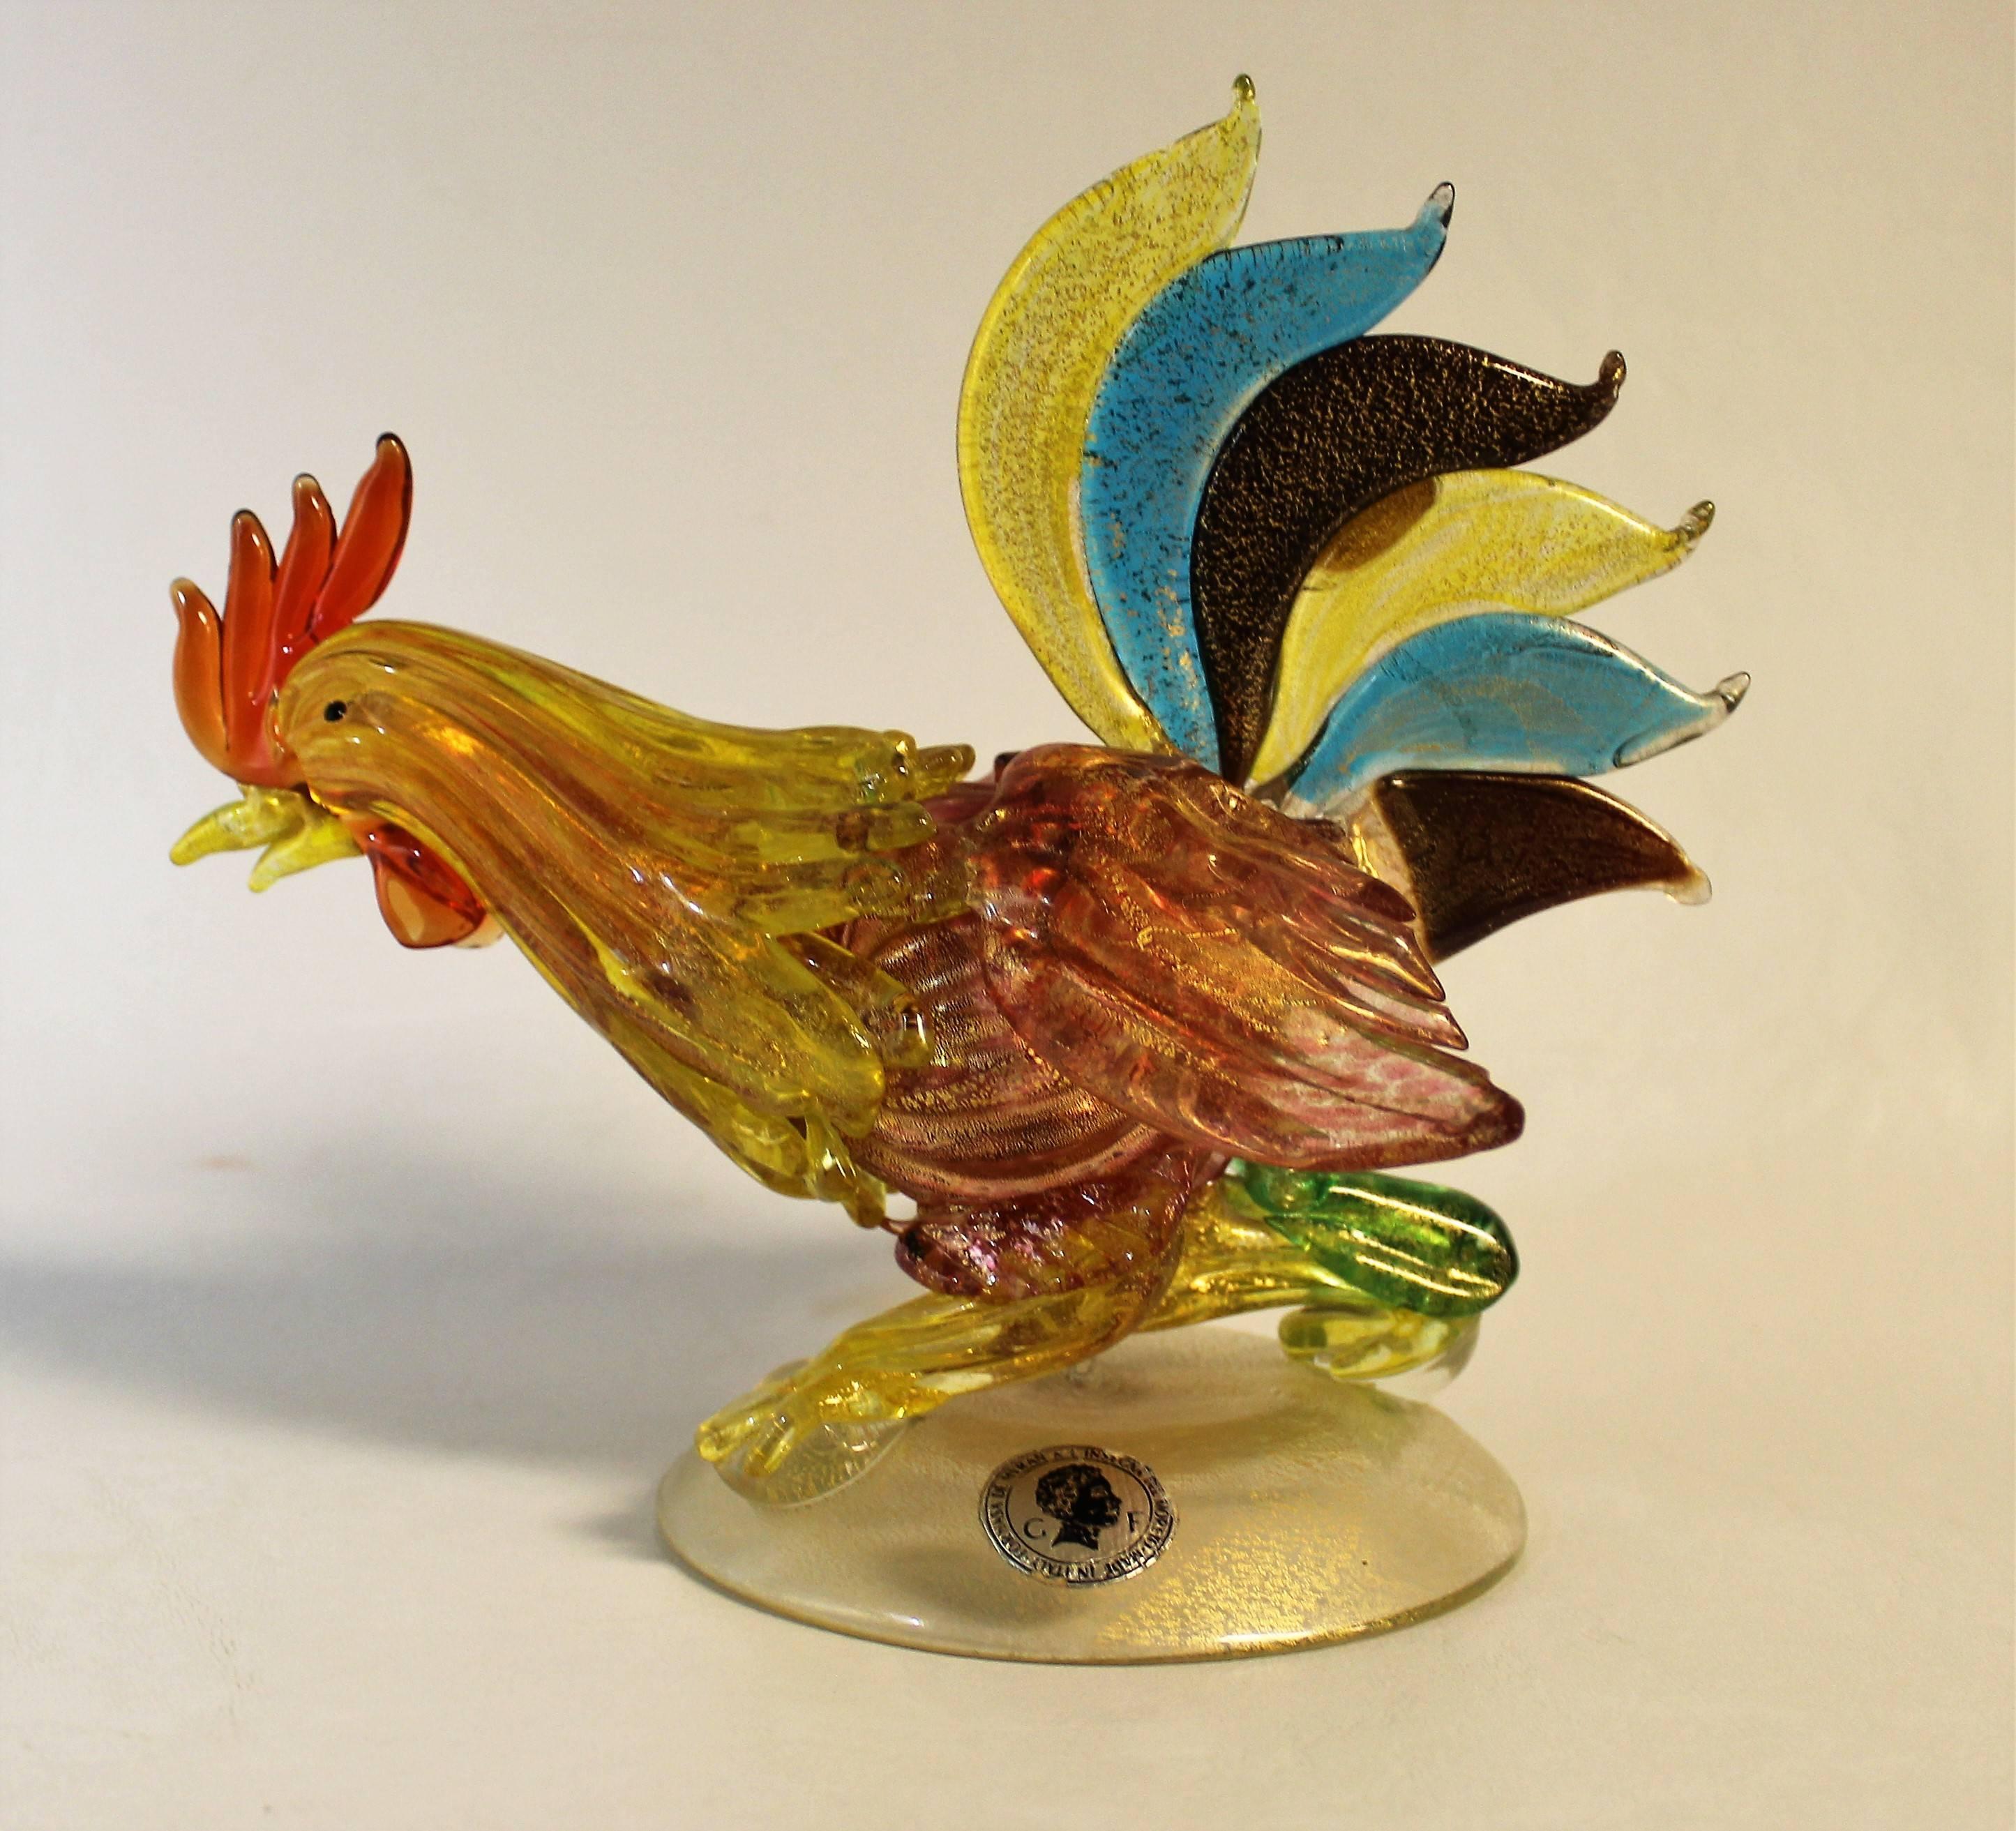 'Fornasa De Murano A L'Insegna Del Moreto' Italian art glass fighting rooster.